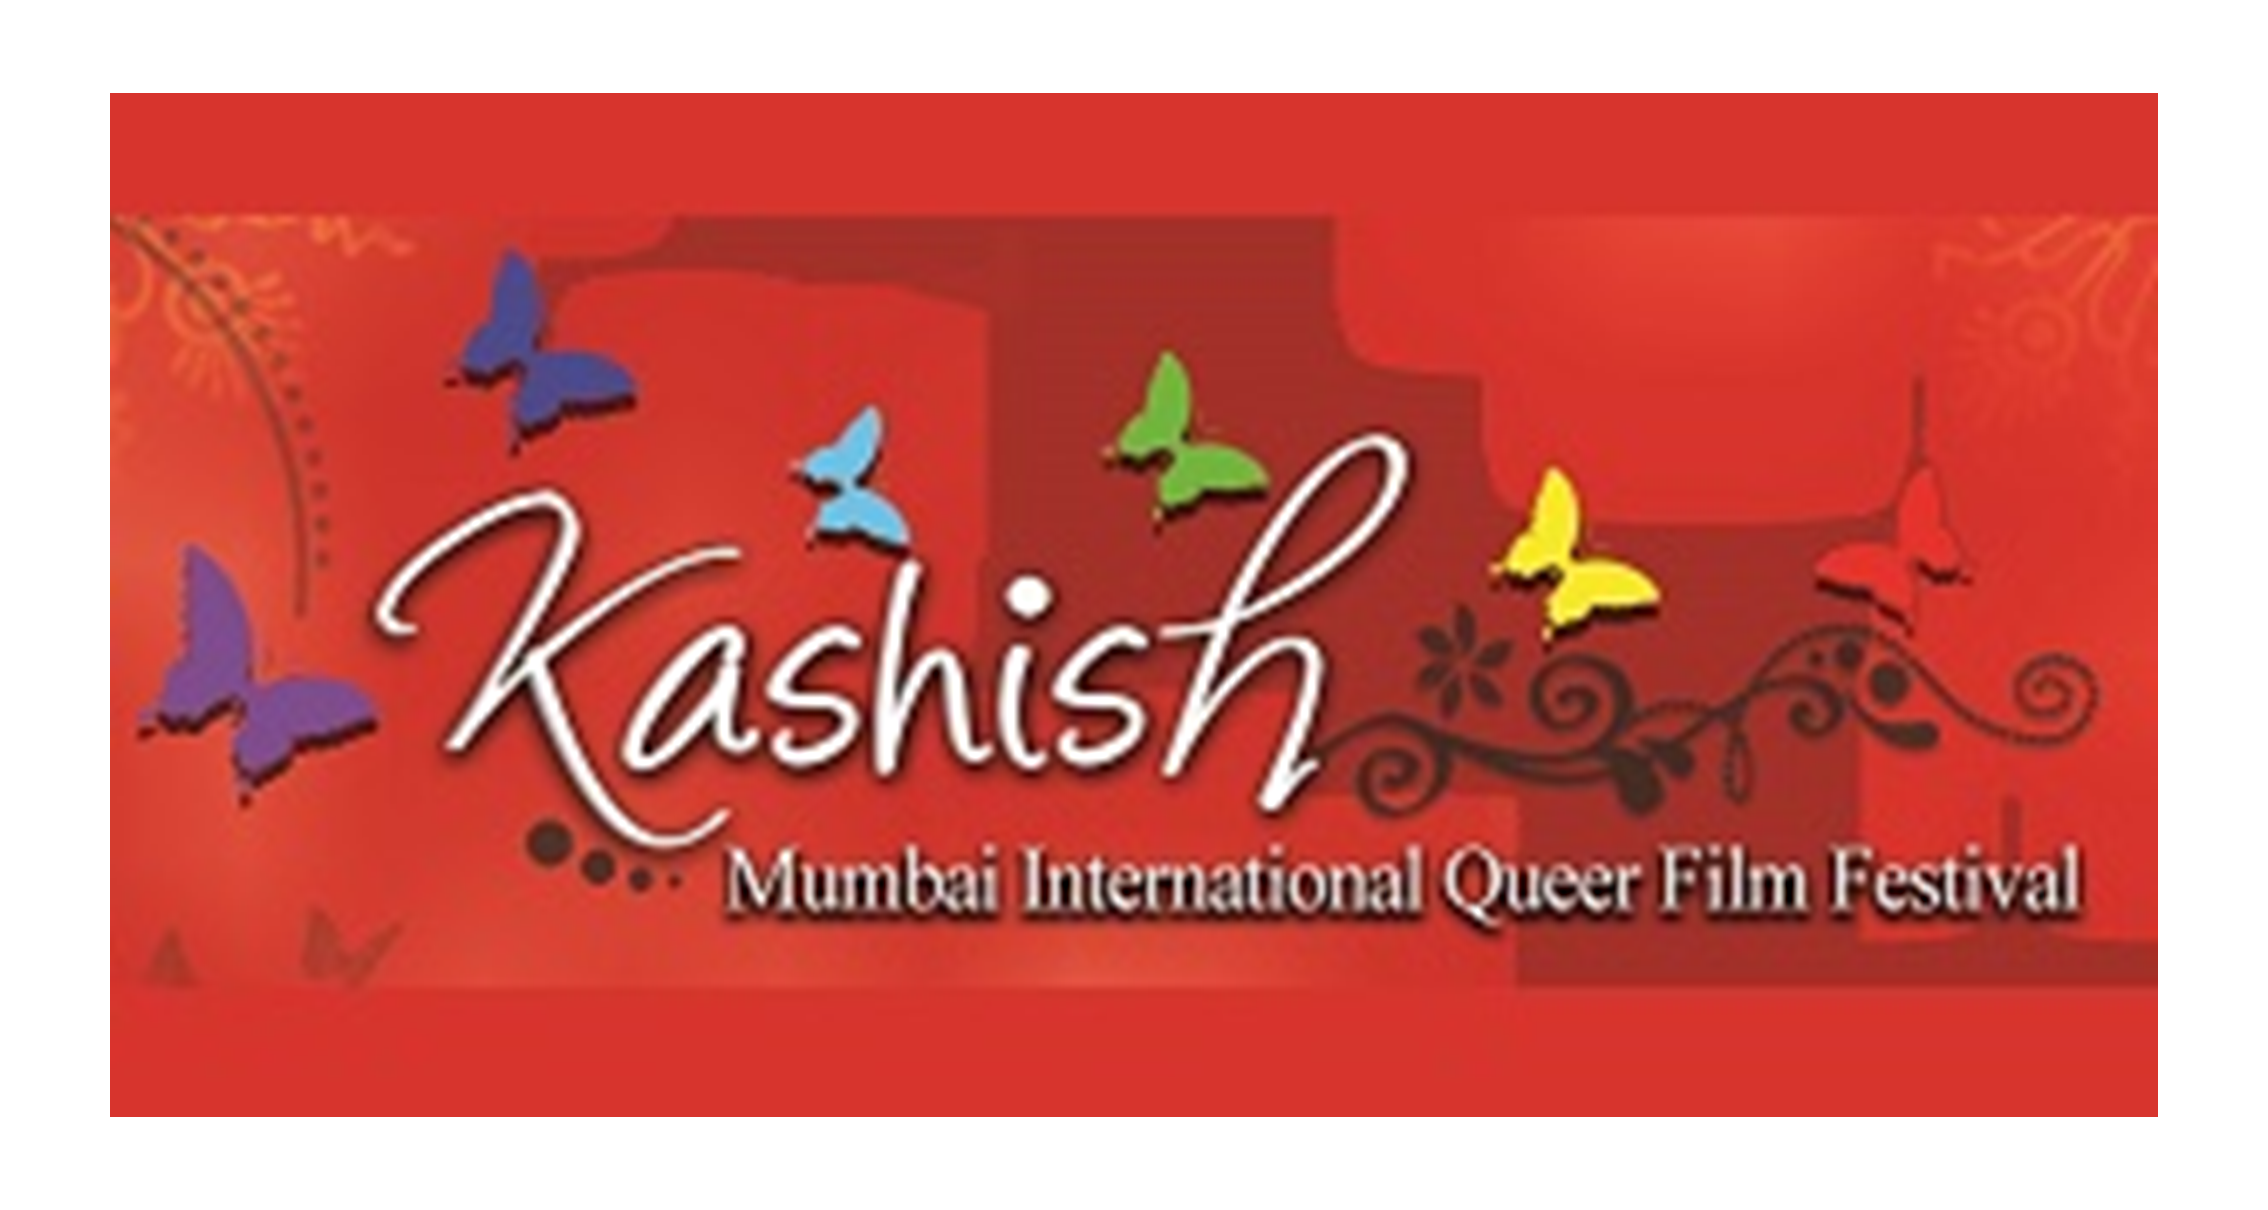 孟买国际同志影展 Kashish Mumbai IQFF